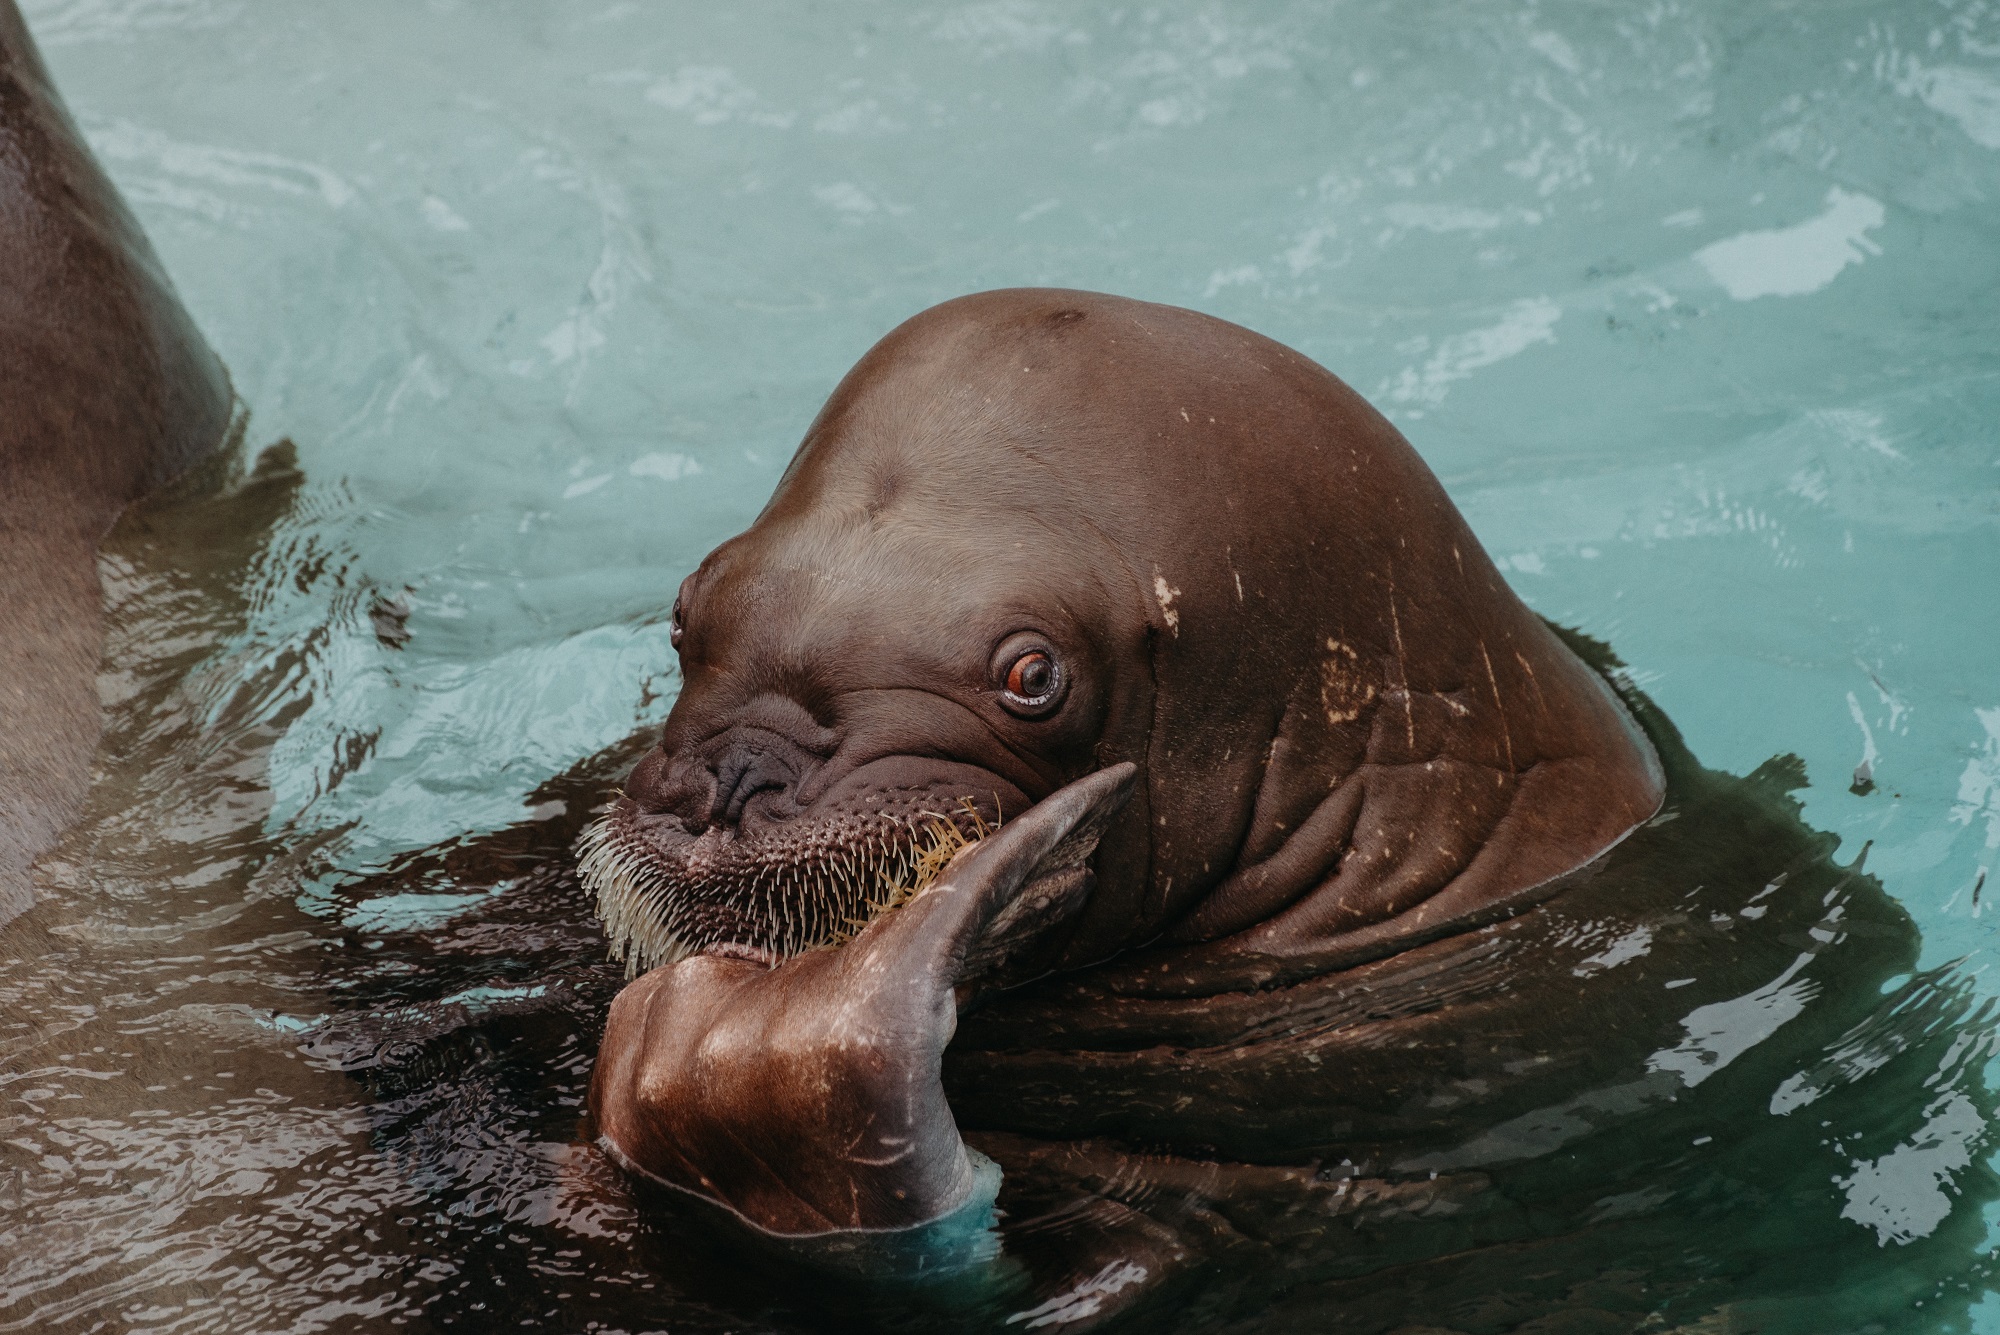 Image shows walrus in aquarium